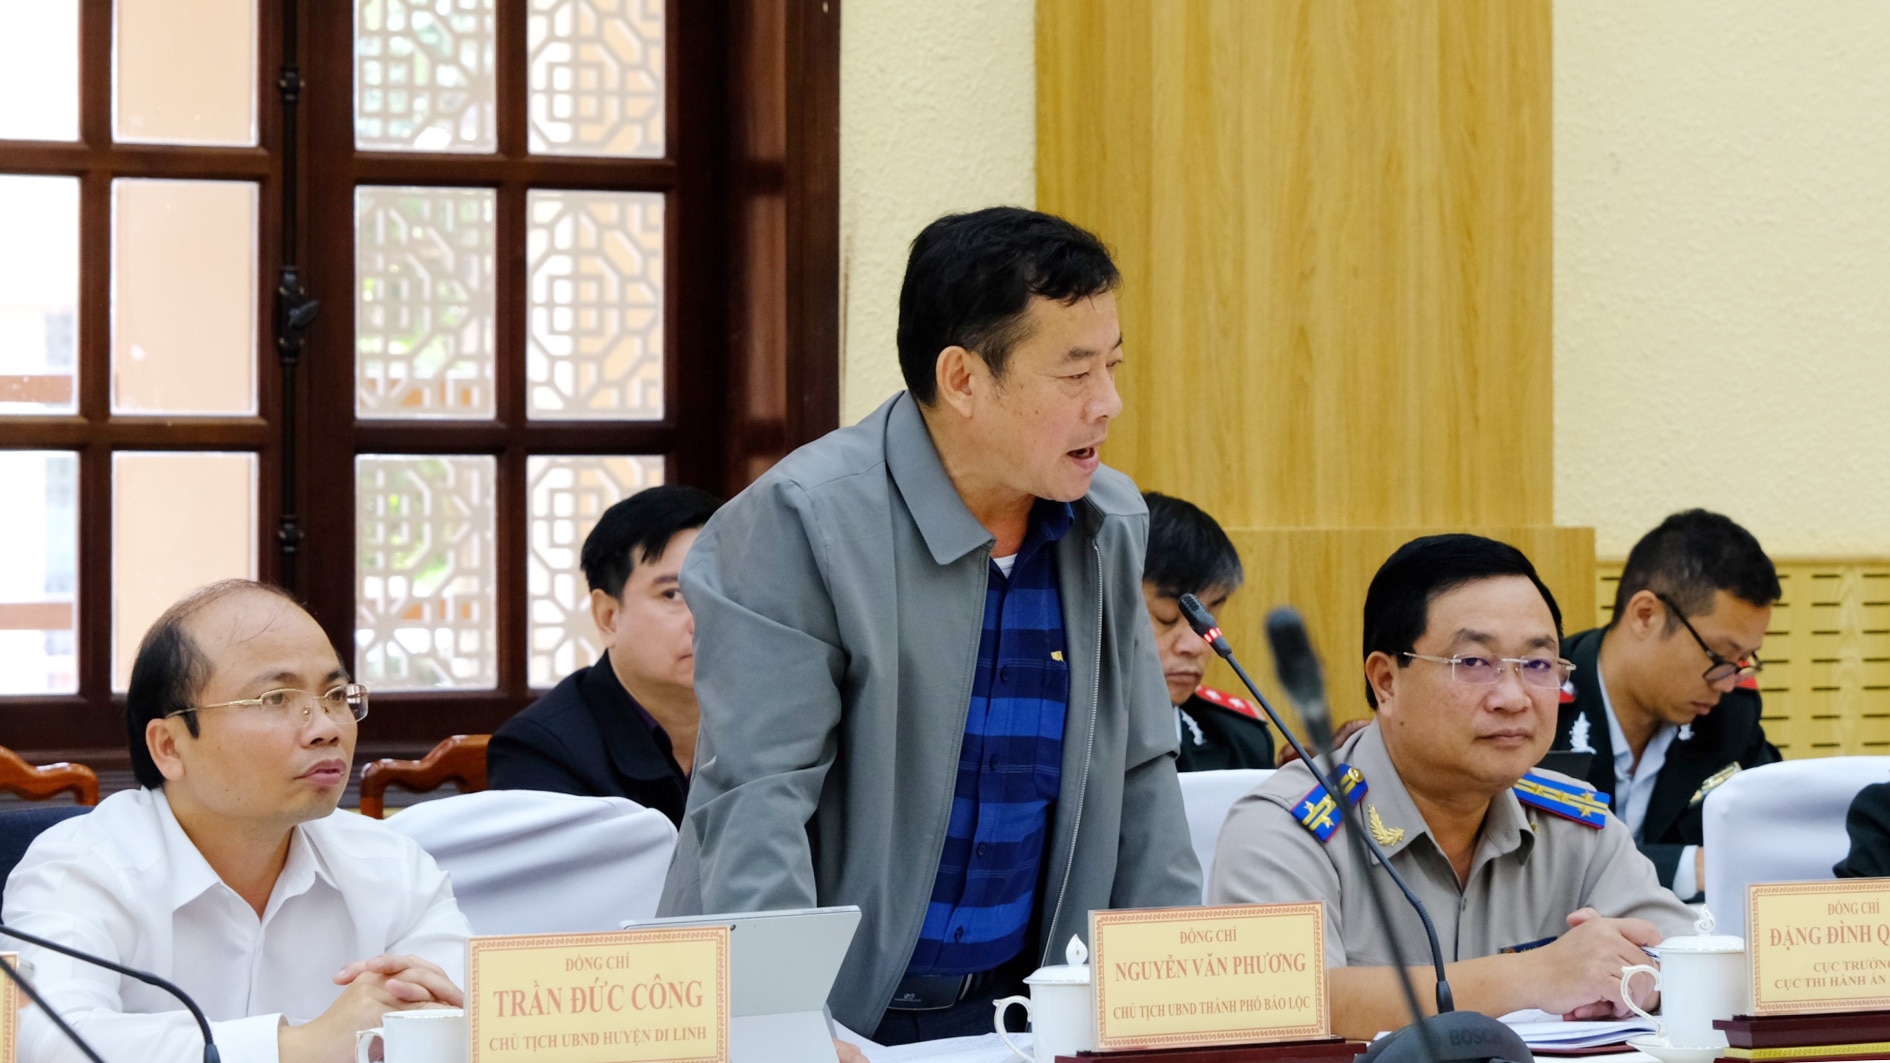 Chủ tịch UBND TP Bảo Lộc Nguyễn Văn Phương trả lời các ý kiến được công dân đưa ra